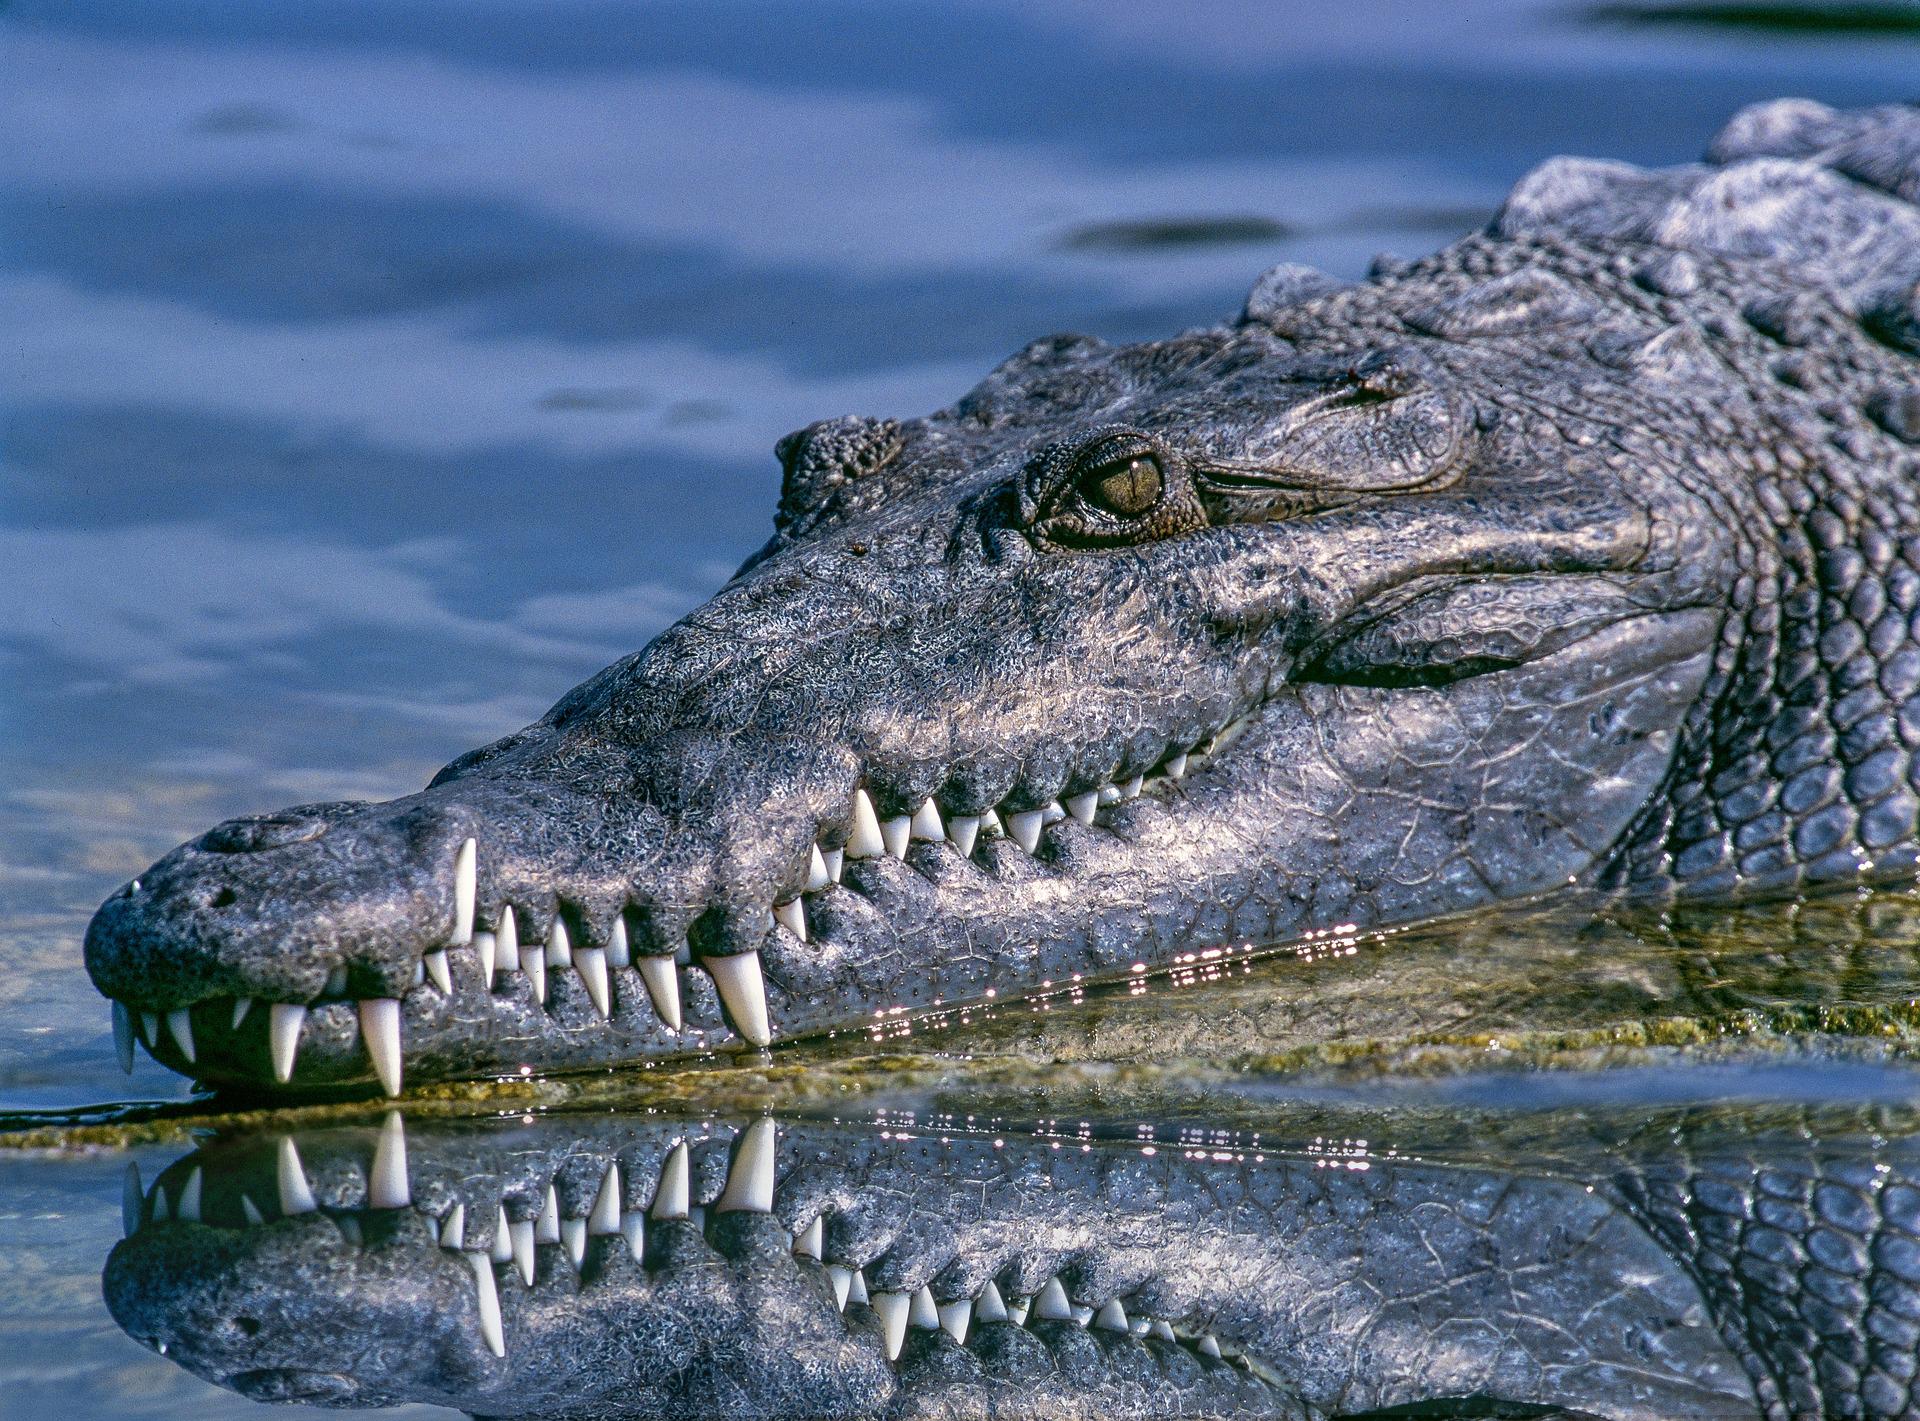 Crocodilo gigantesco causa entupimento de esgoto #criador